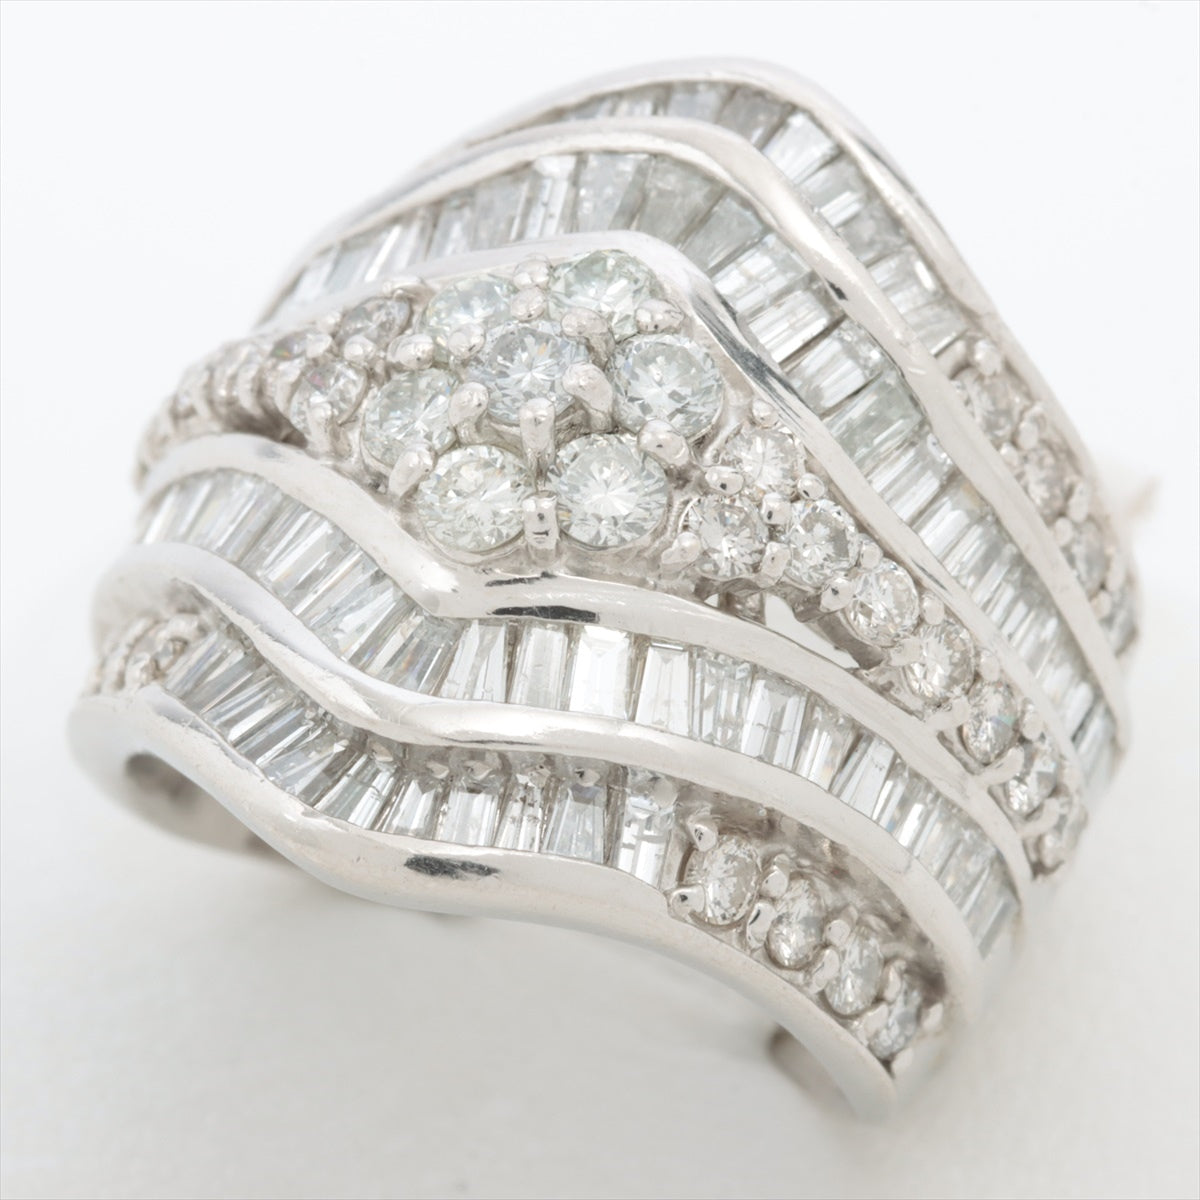 Diamond Ring Pt900 17.7g 300 N